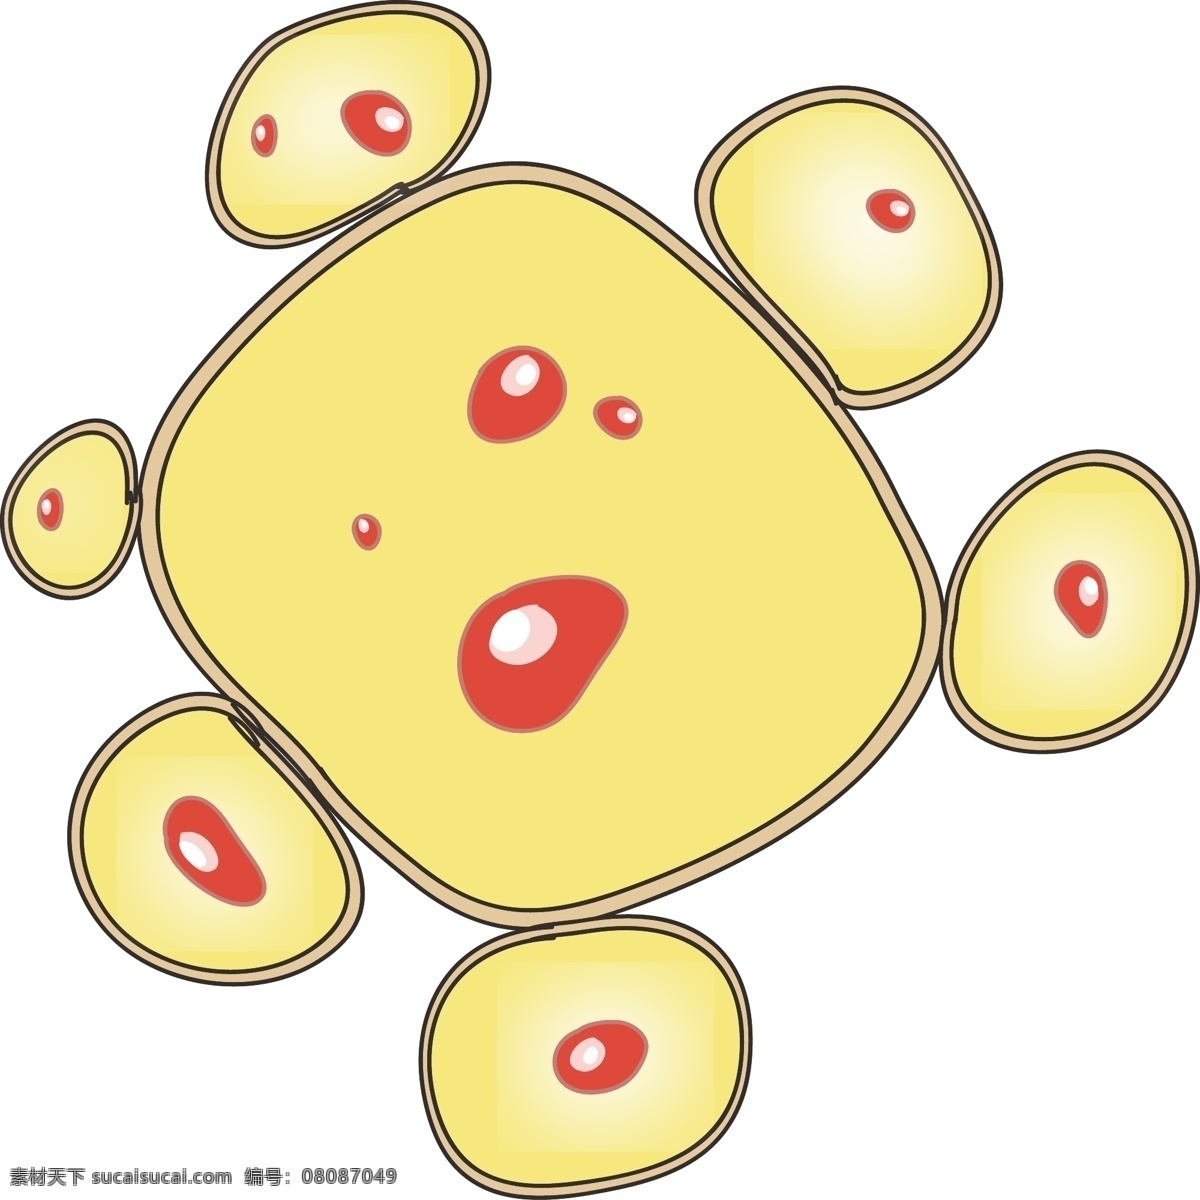 黄色 细菌 卡通 插画 黄色的细菌 细菌插画 卡通插画 细胞膜插画 细胞壁 核糖体 病菌 人体的细菌